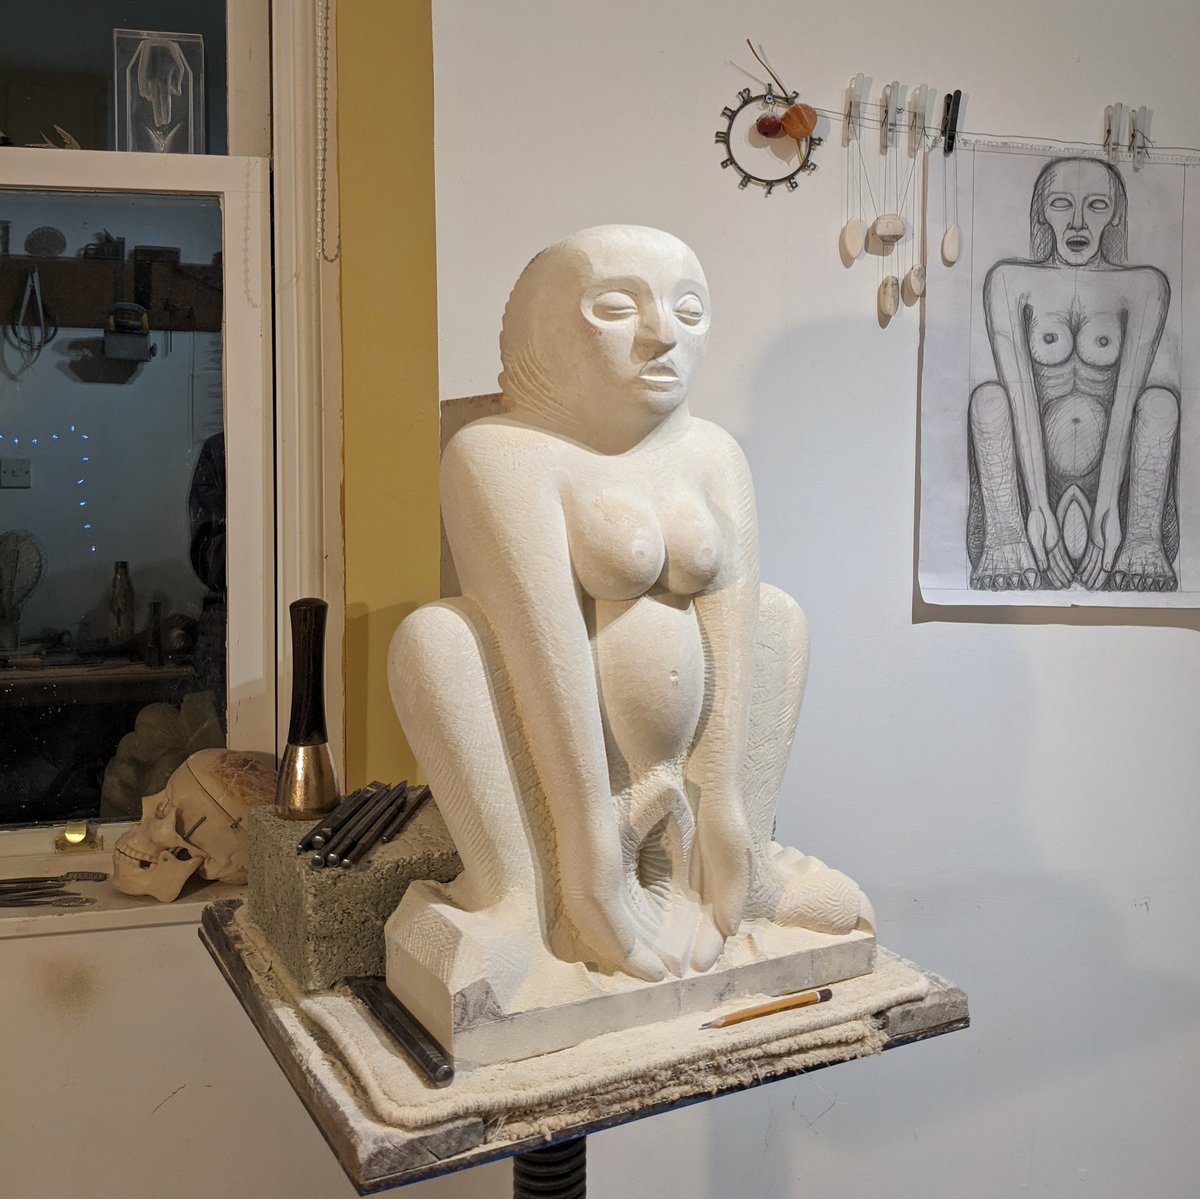 Moving forward with my sculpture #workinprogress #contemporarysculpture #britishsculpture #femalesculptor  #stonesculptor #stonecarving #modernbritishsculpture #sheelanagig #feministartist #BirthDeathRebirth